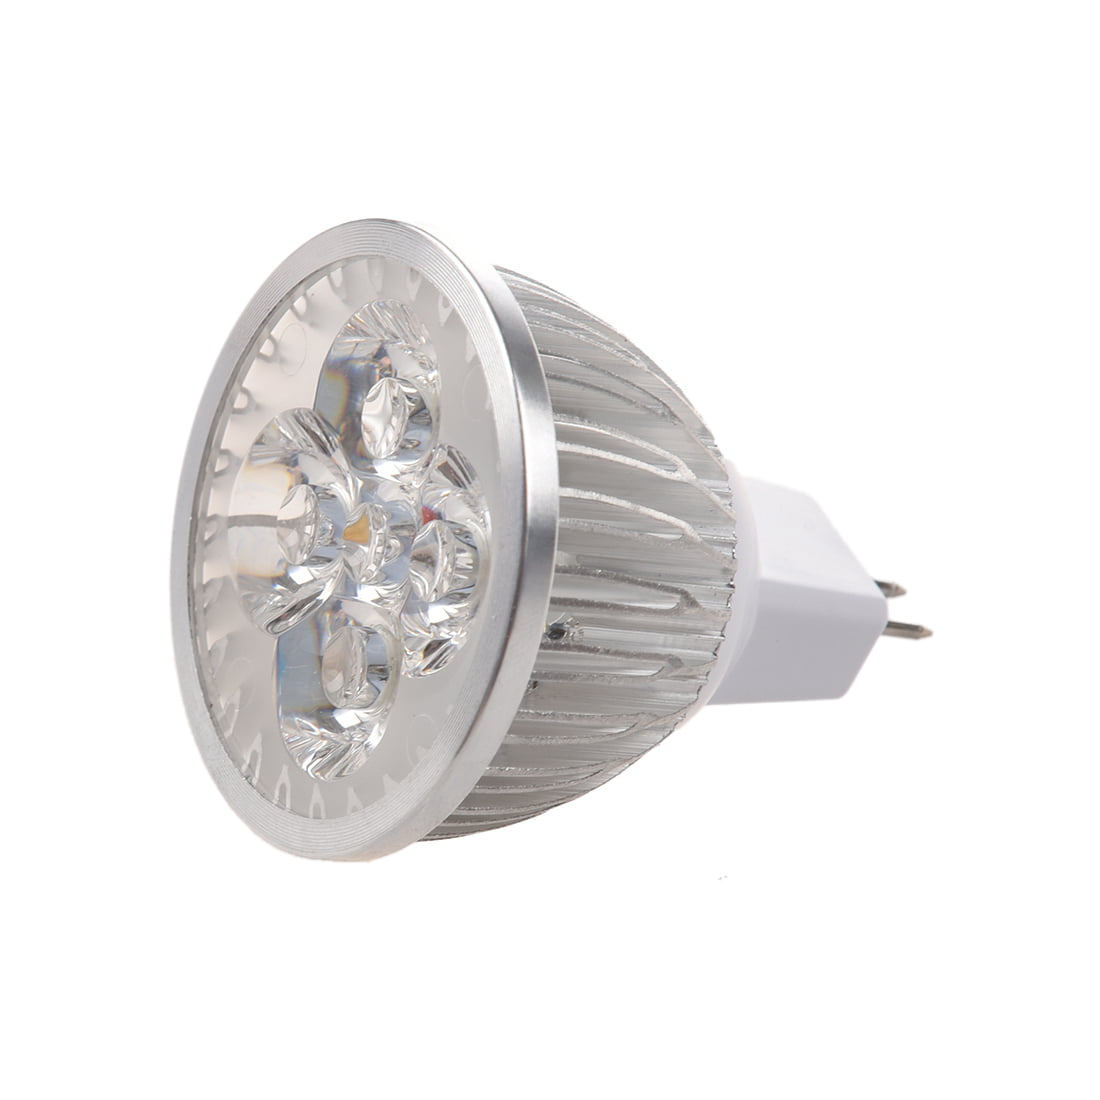 Technologie Verschrikking etiquette 4 * 1W GU5.3 MR16 12V Warm White LED Light Lamp Bulb Spotlight - Walmart.com